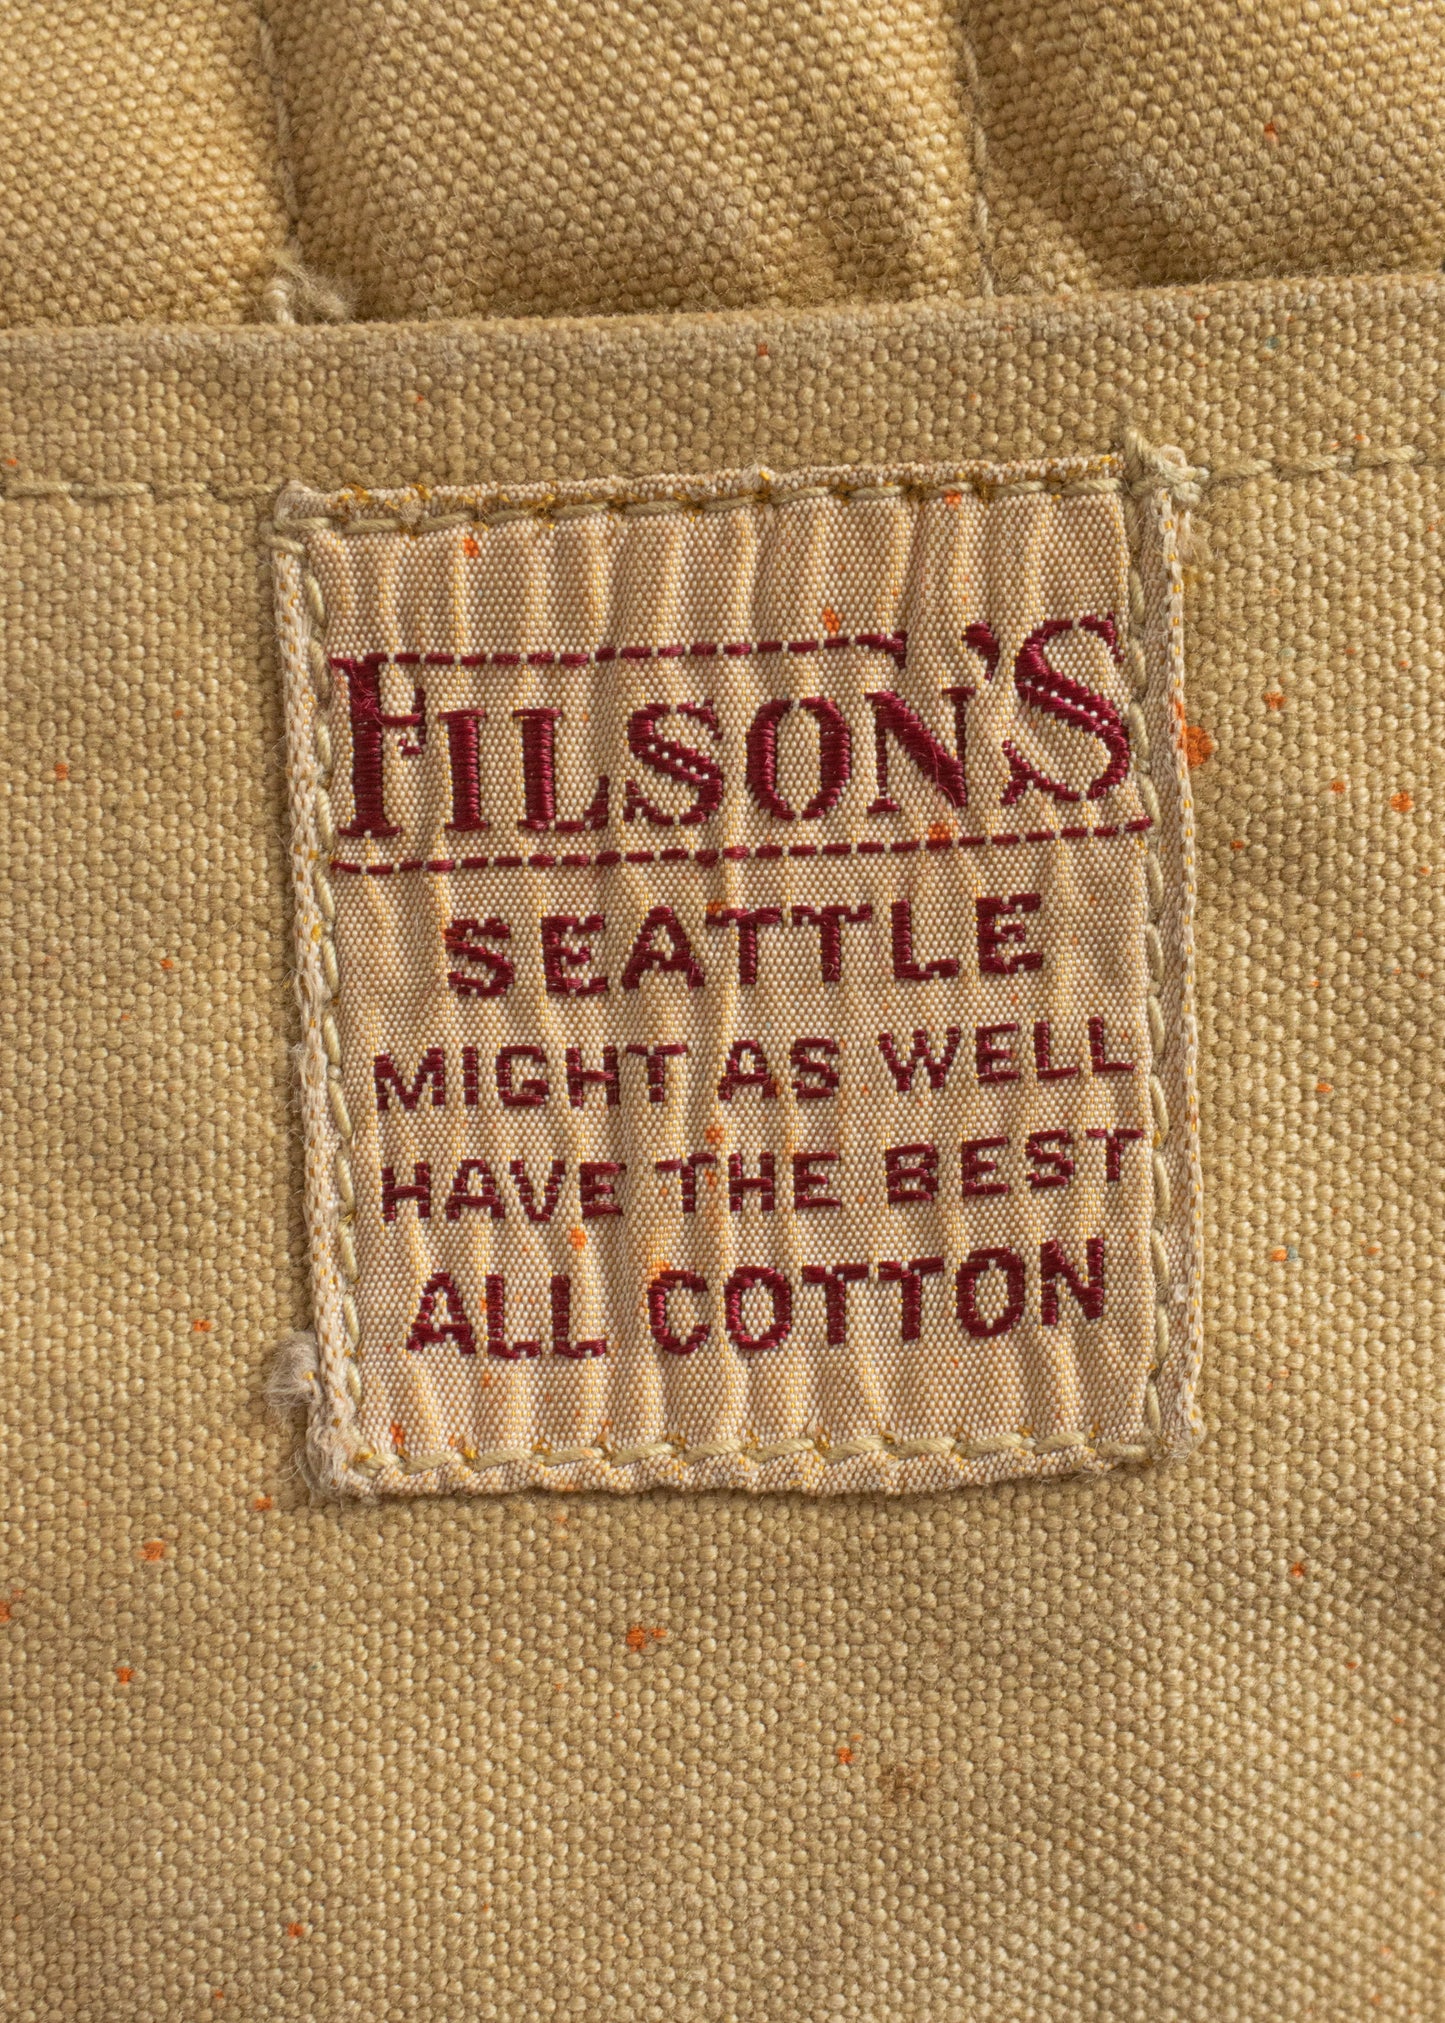 Vintage 1950s Filson Duck Canvas Hunting Vest Size M/L